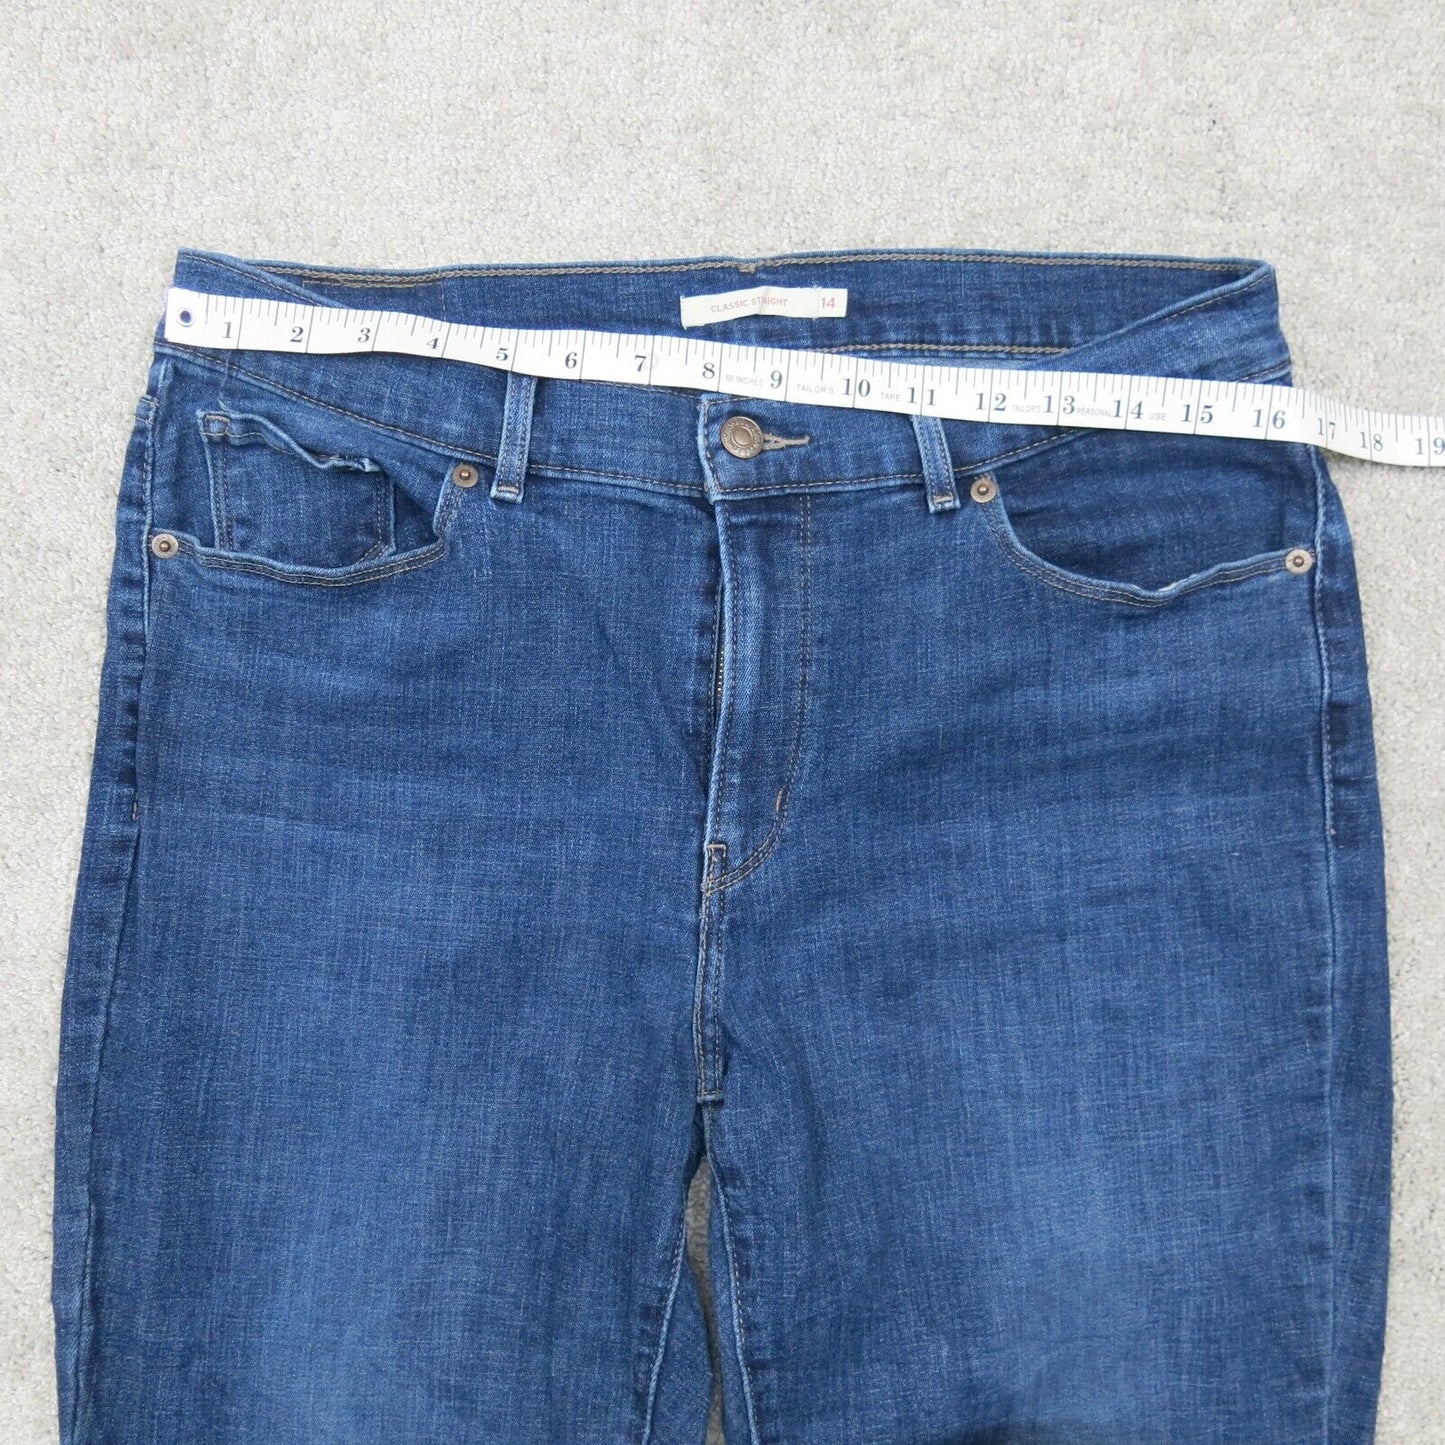 Levis Mens Classic Straight Leg Jeans Mid Rise Cotton Pockets Blue Size W32XL30